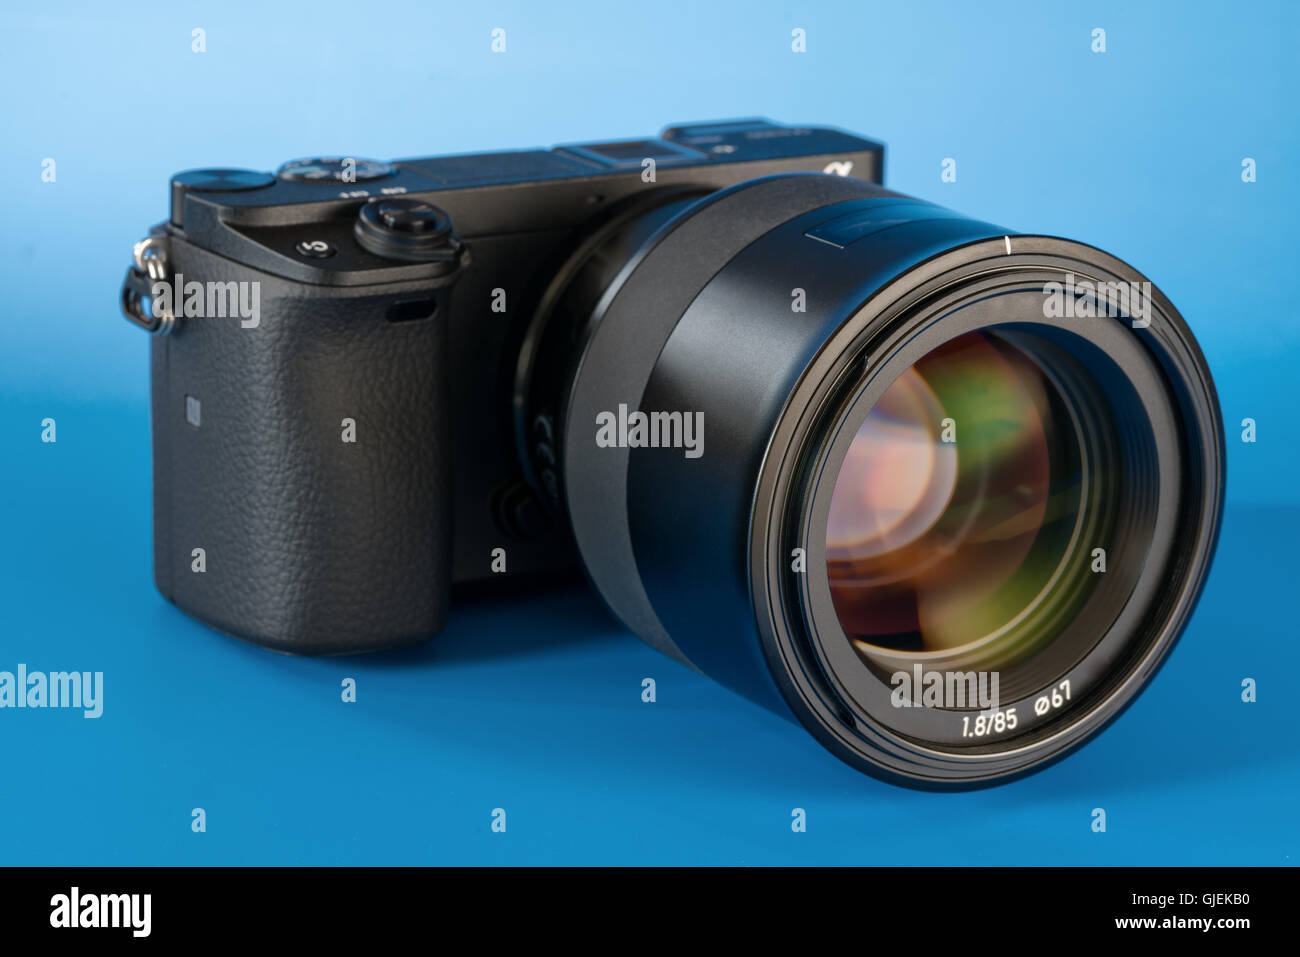 Spiegellose schnelle Fokussierung und 4K-shooting Digitalkamera mit 85mm-Objektiv Stockfoto